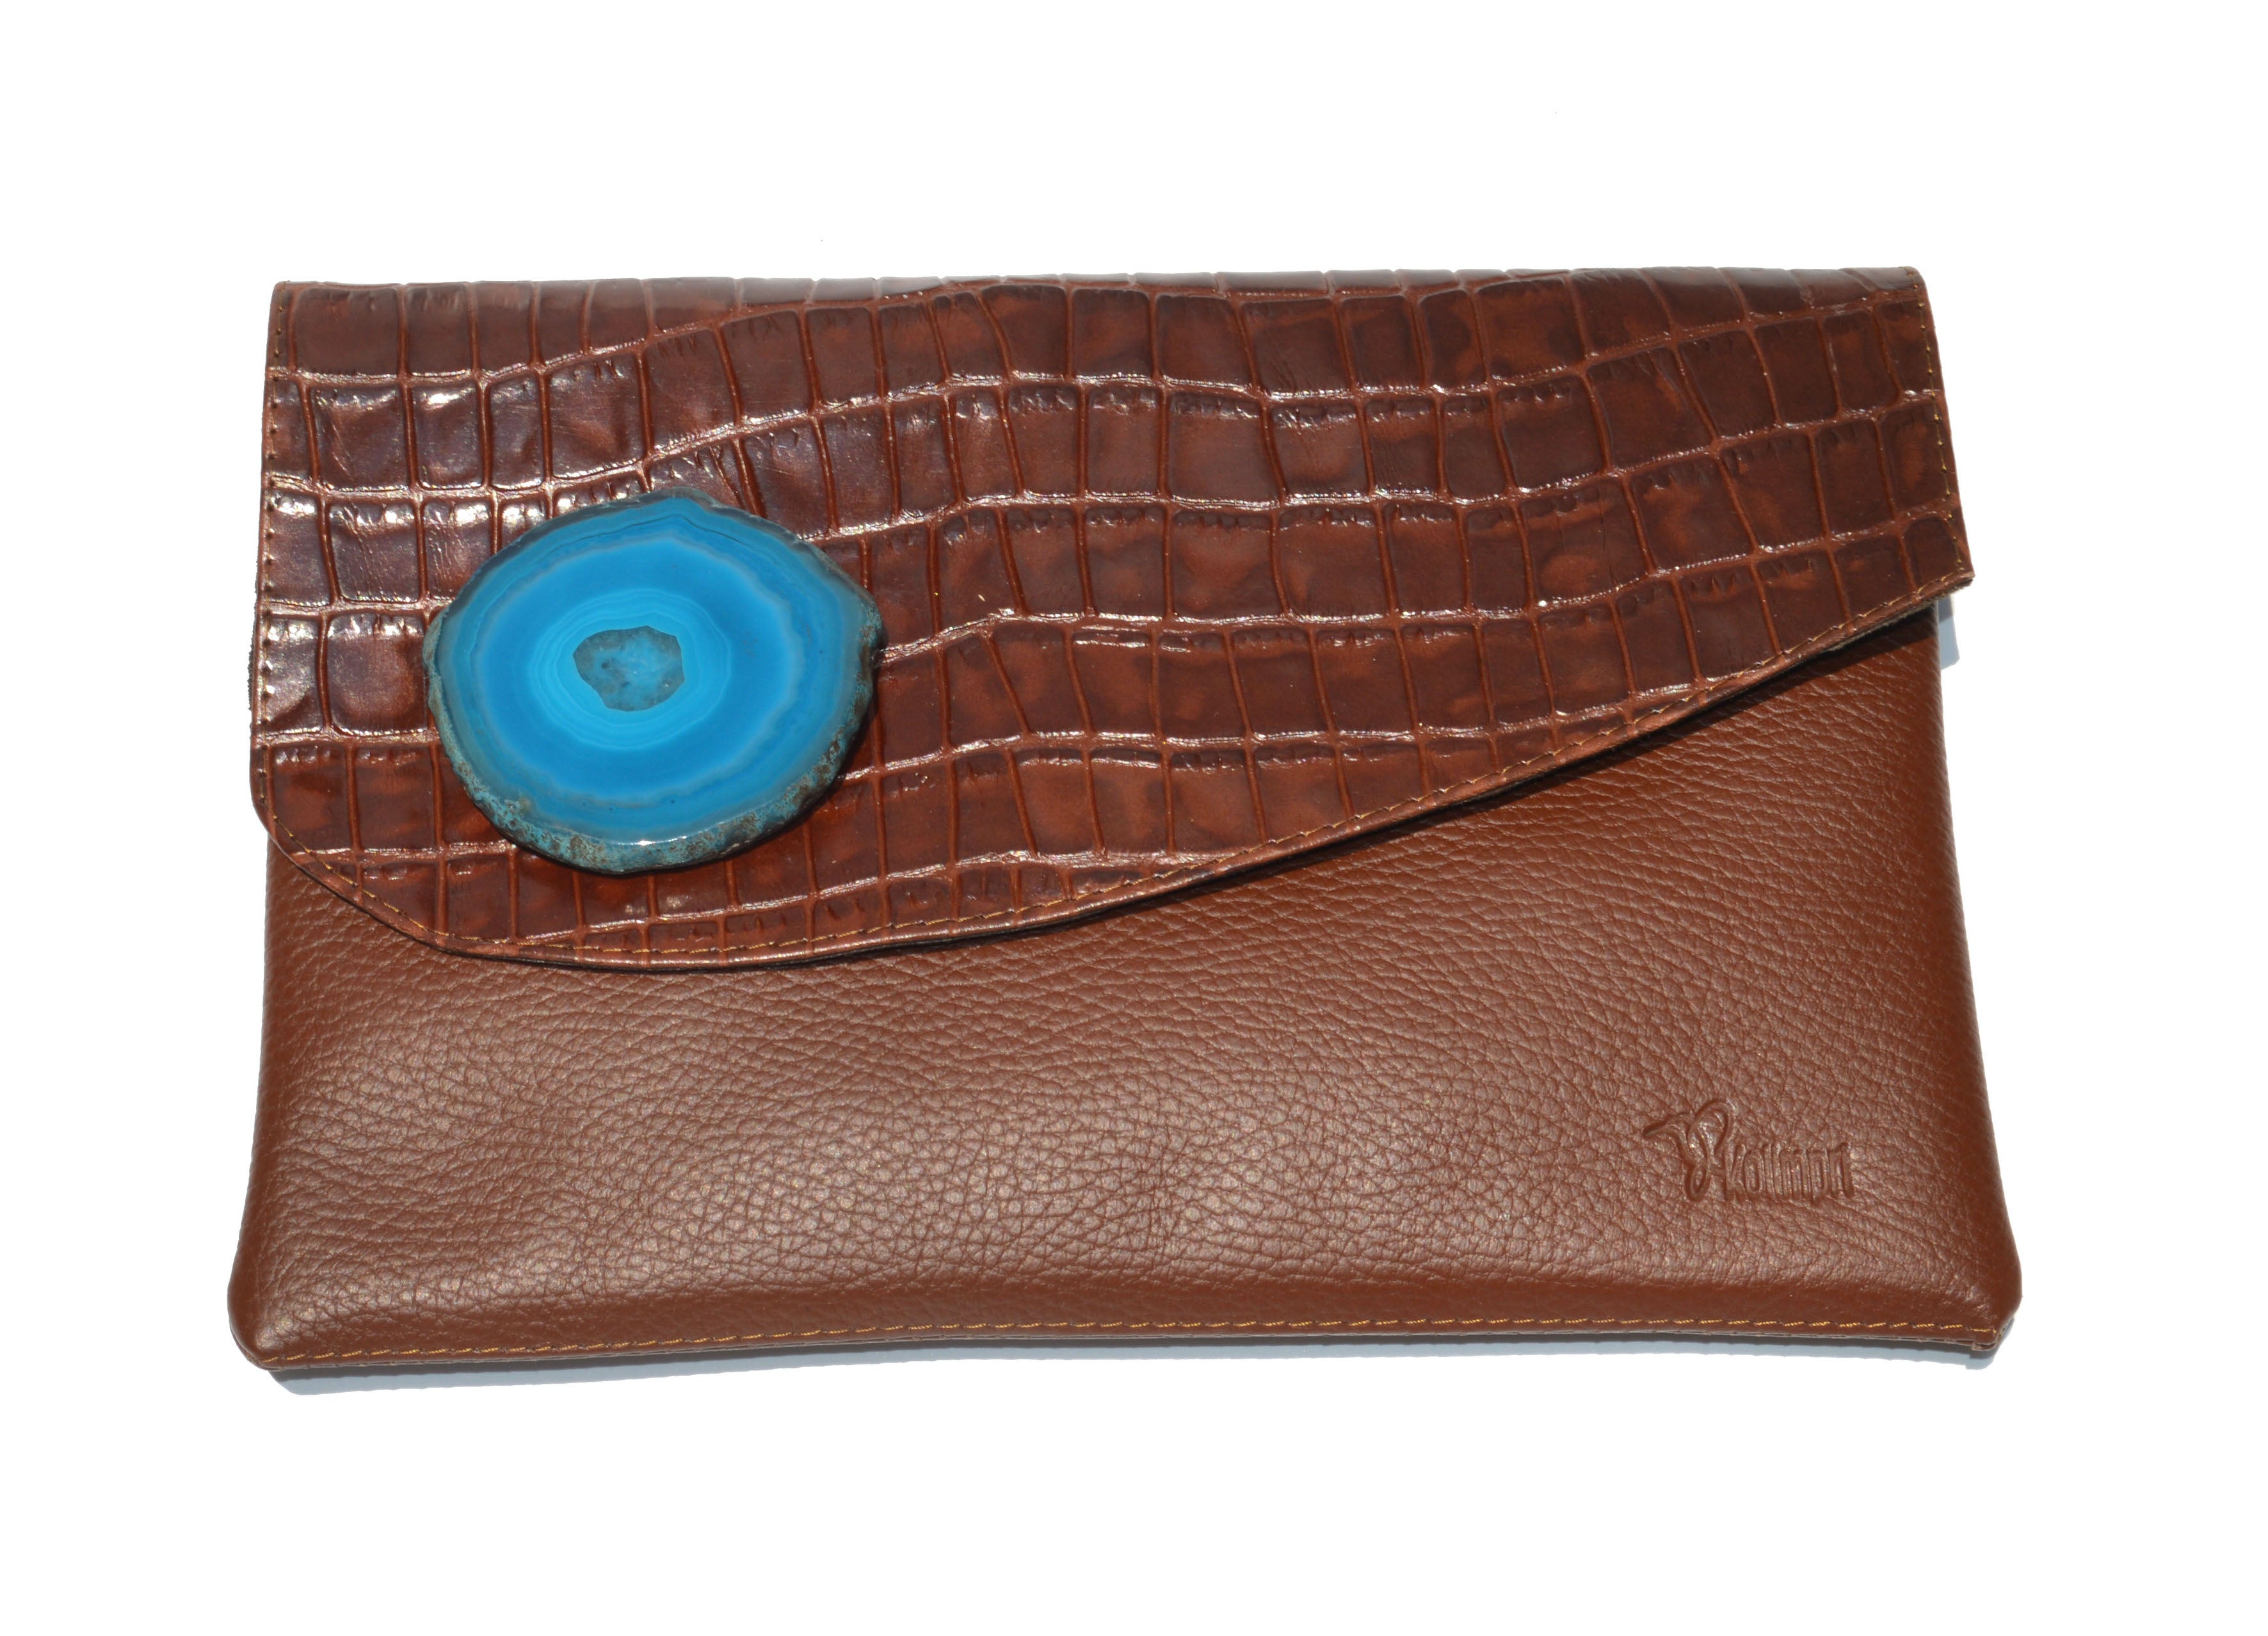 Bolso clutch modelo perlita combinada café - ágata azul